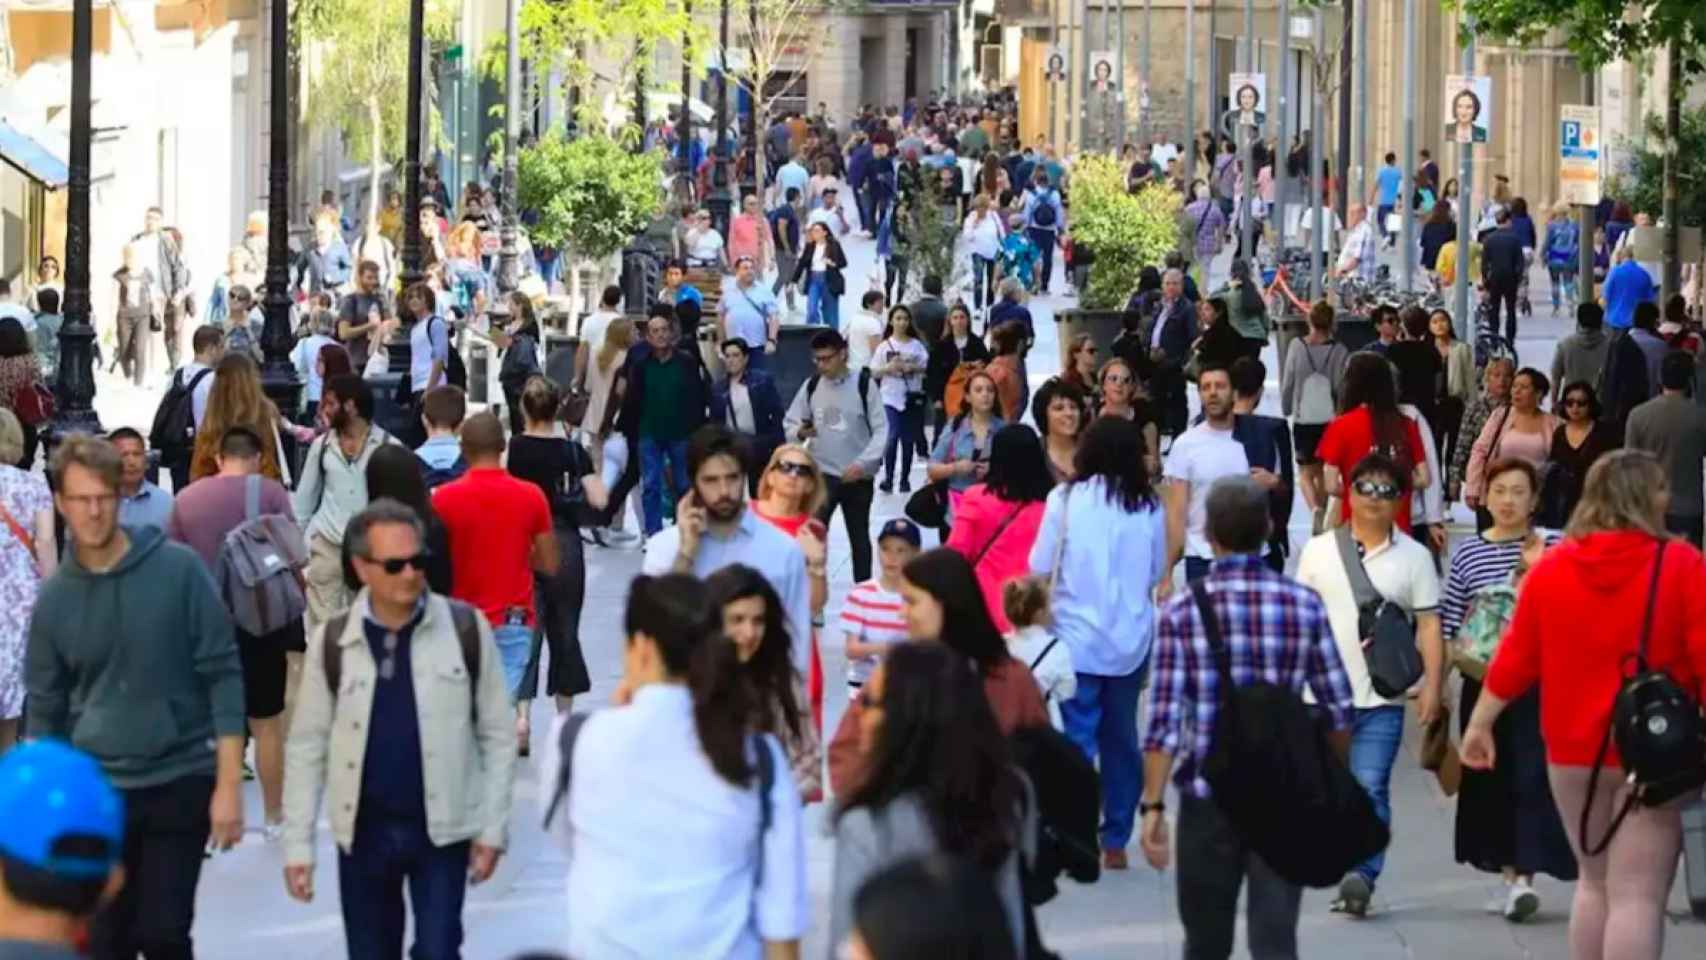 La calle comercial Portal de l'Àngel, ubicada en el centro de Barcelona, llena de gente